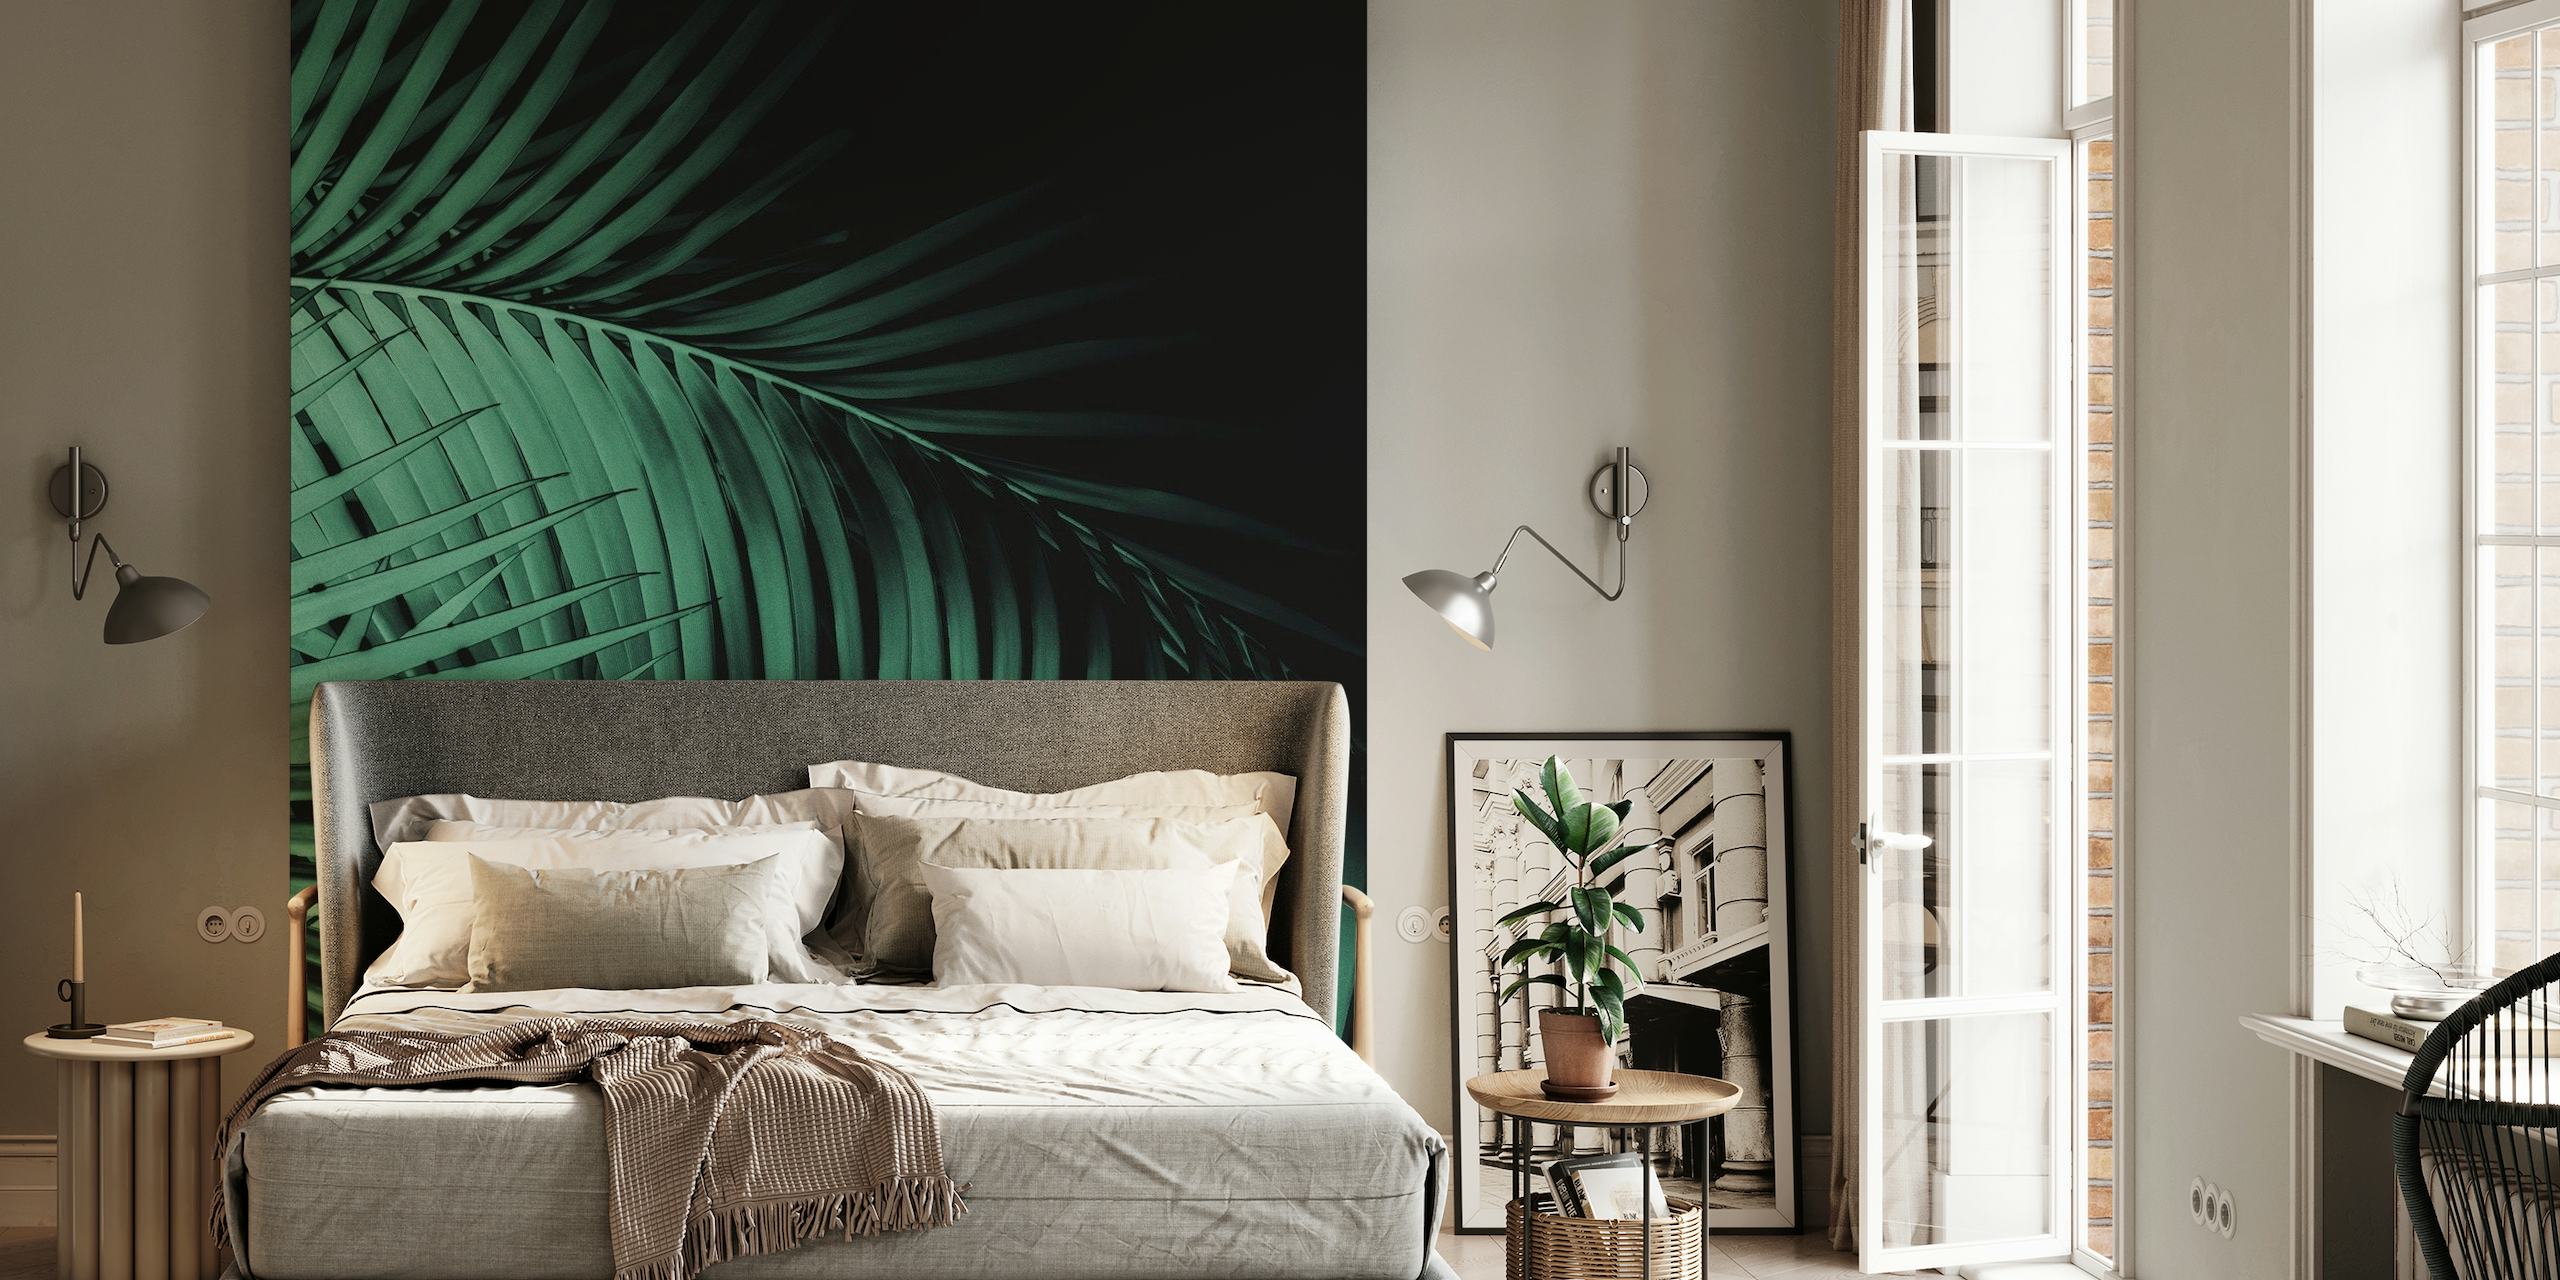 Mural de pared Palm Leaves Green Vibes 7 con un patrón de denso follaje de palmeras en tonos verdes